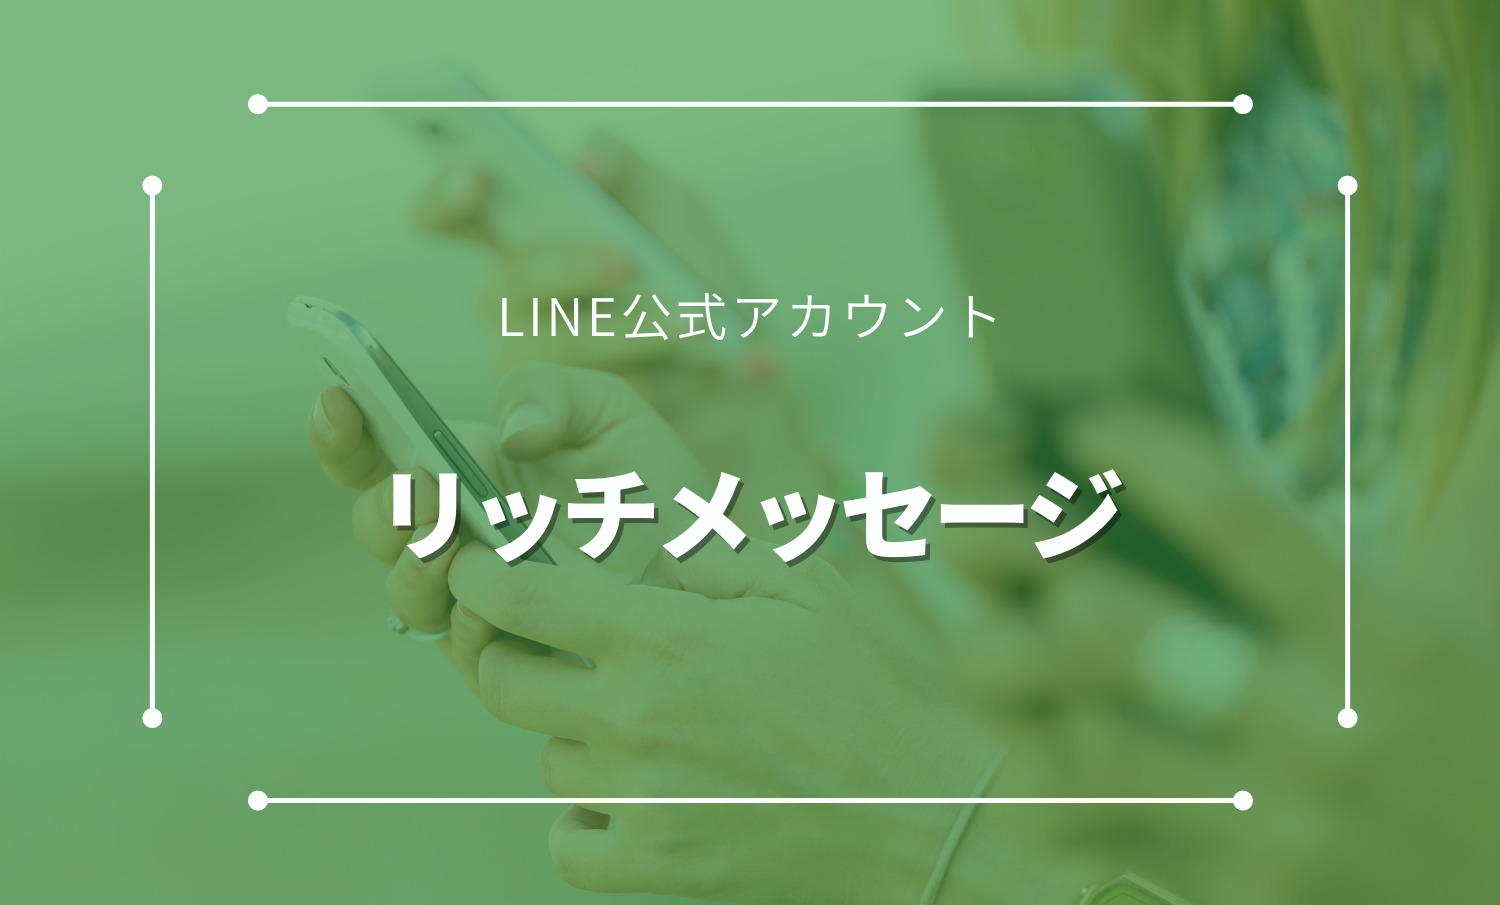 LINE公式アカウントのリッチメッセージについて徹底解説。その機能やメリットなど。